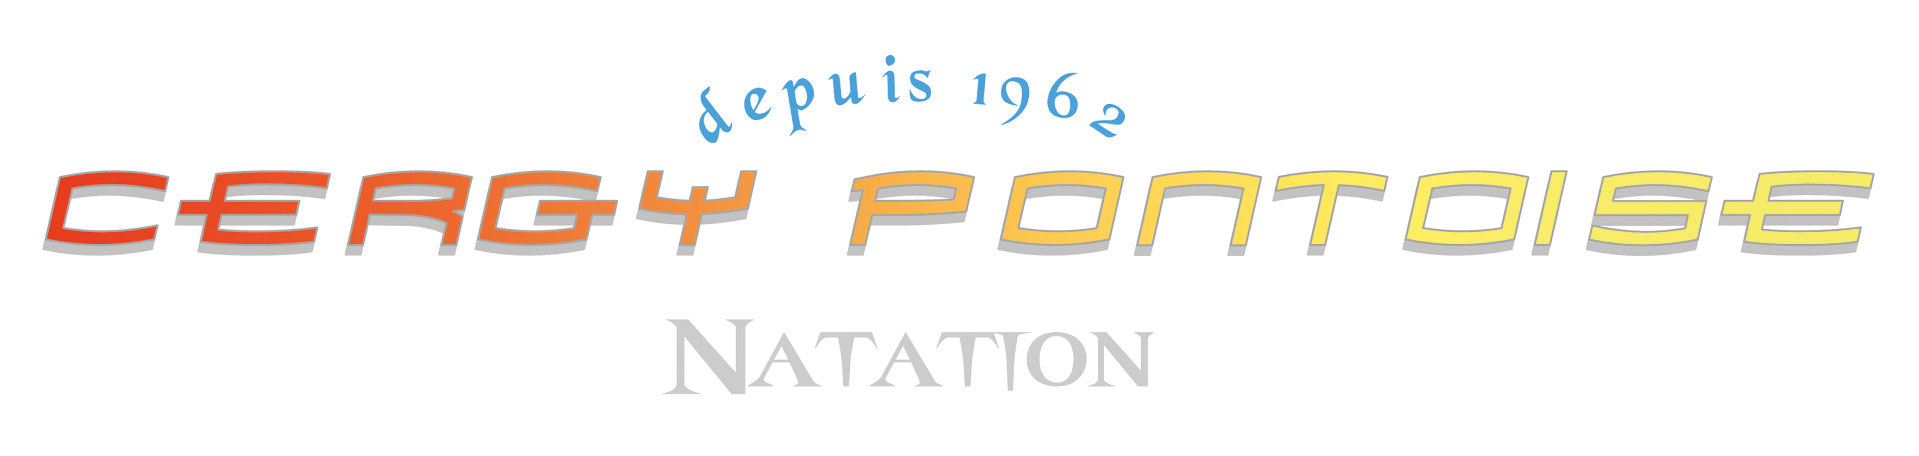 Logo de Cergy-Pontoise Natation